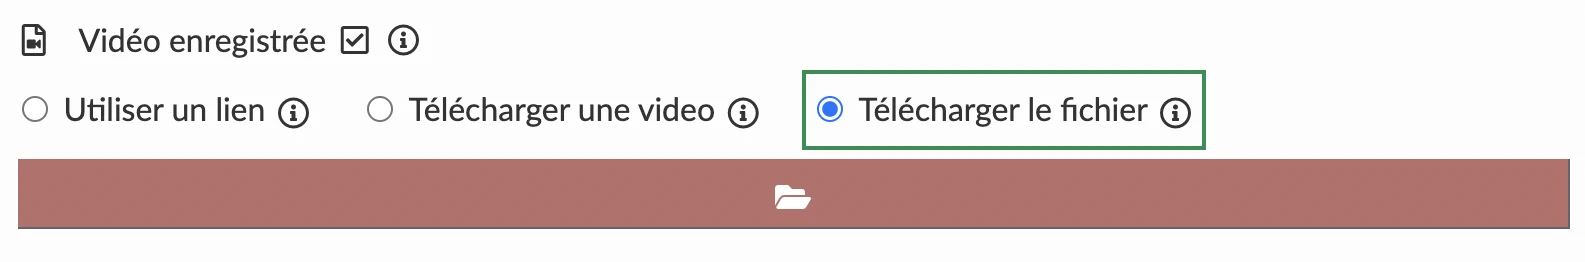 Télécharger le fichier dans une activité avec le mode vidéo préenregistrée